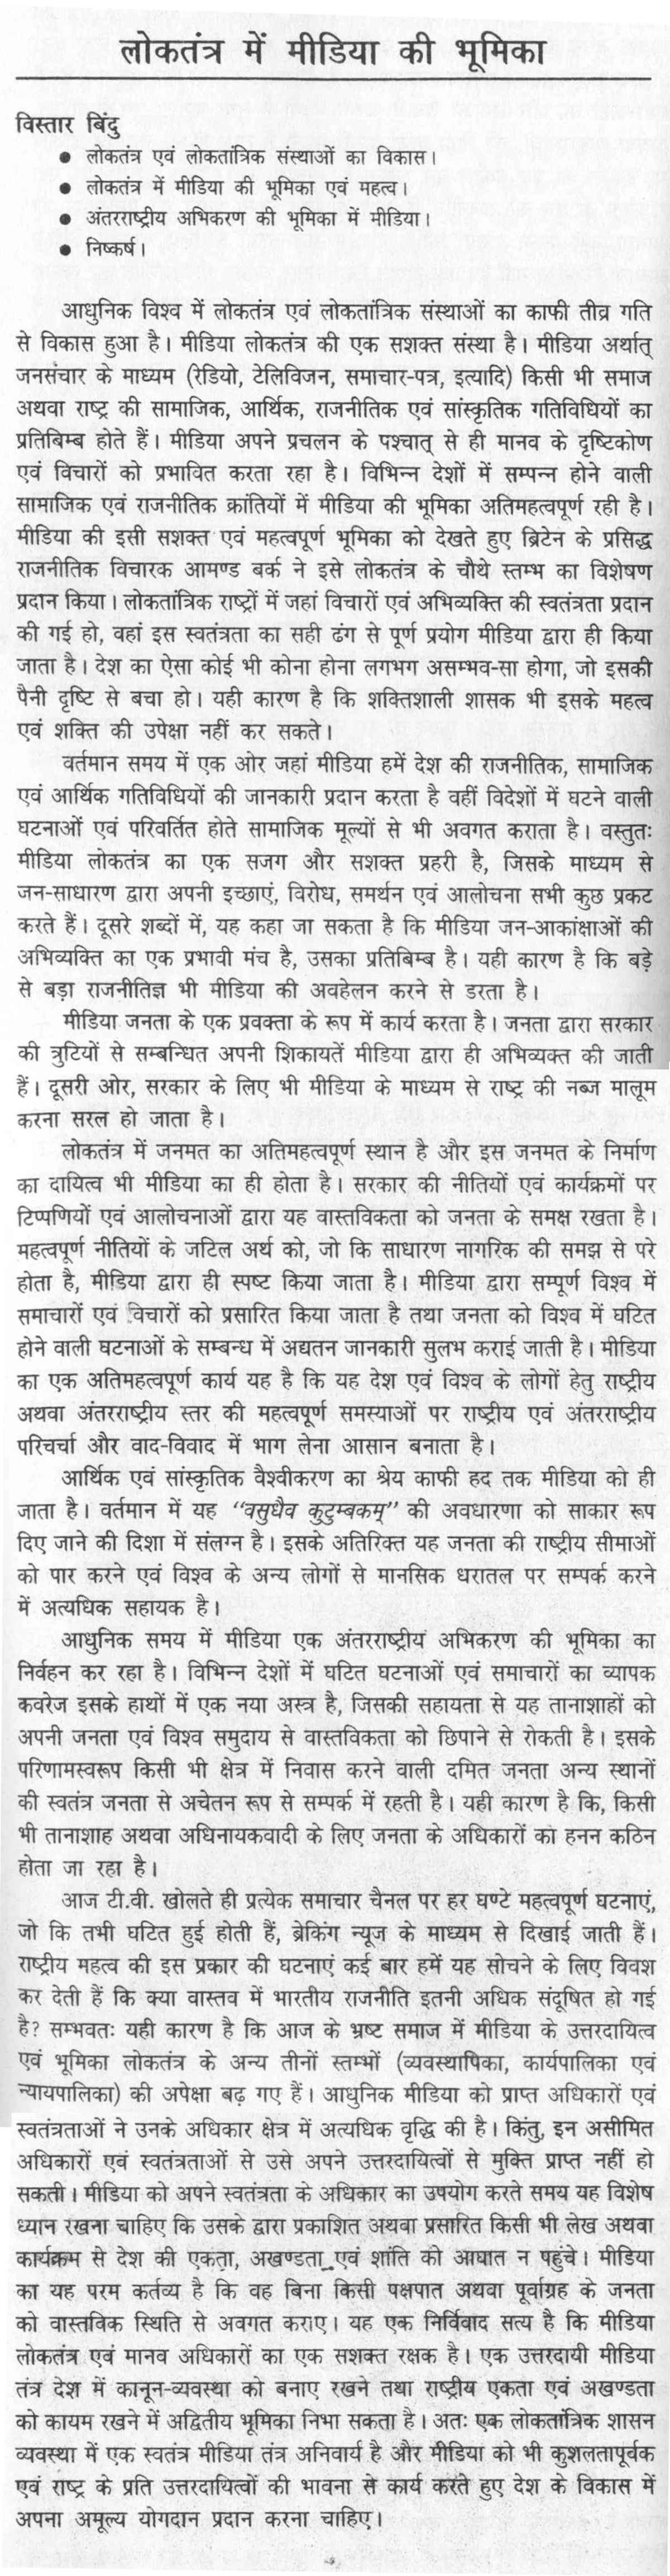 essay on mass media in hindi